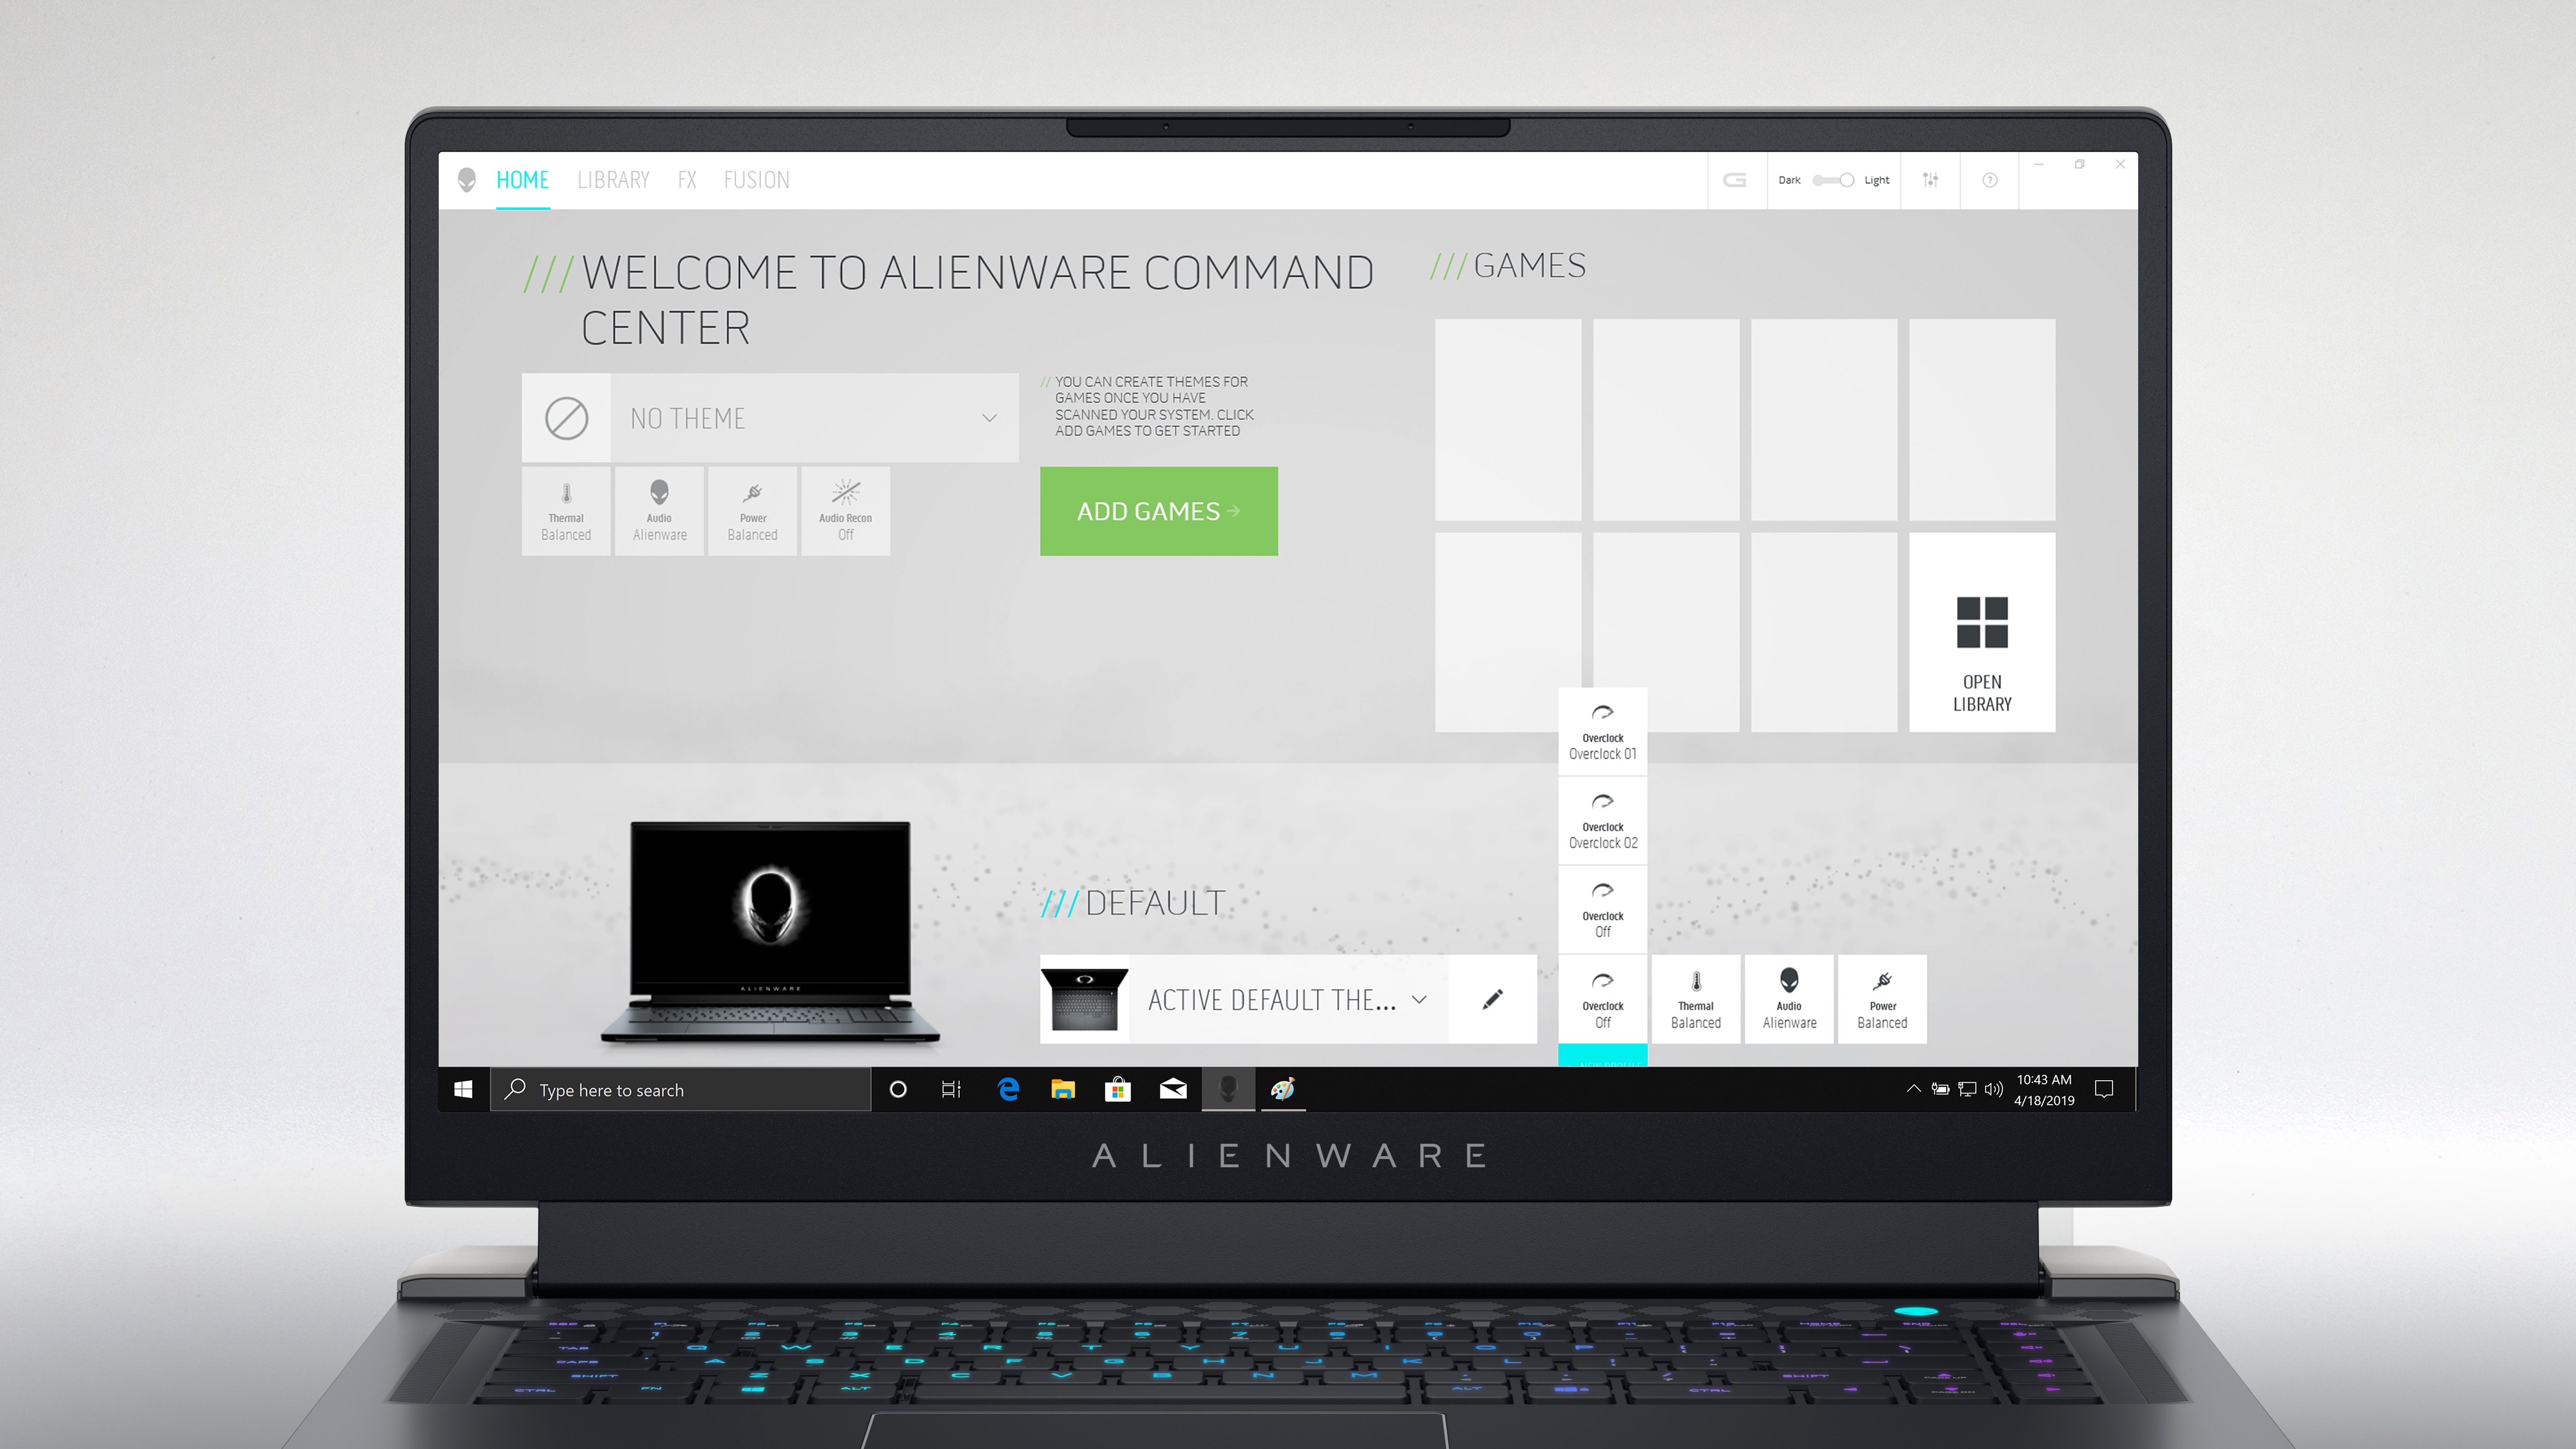 Bild des Dell Alienware x15 R2-Gaminglaptops mit der Startseite des Alienware Command Center auf dem Bildschirm.